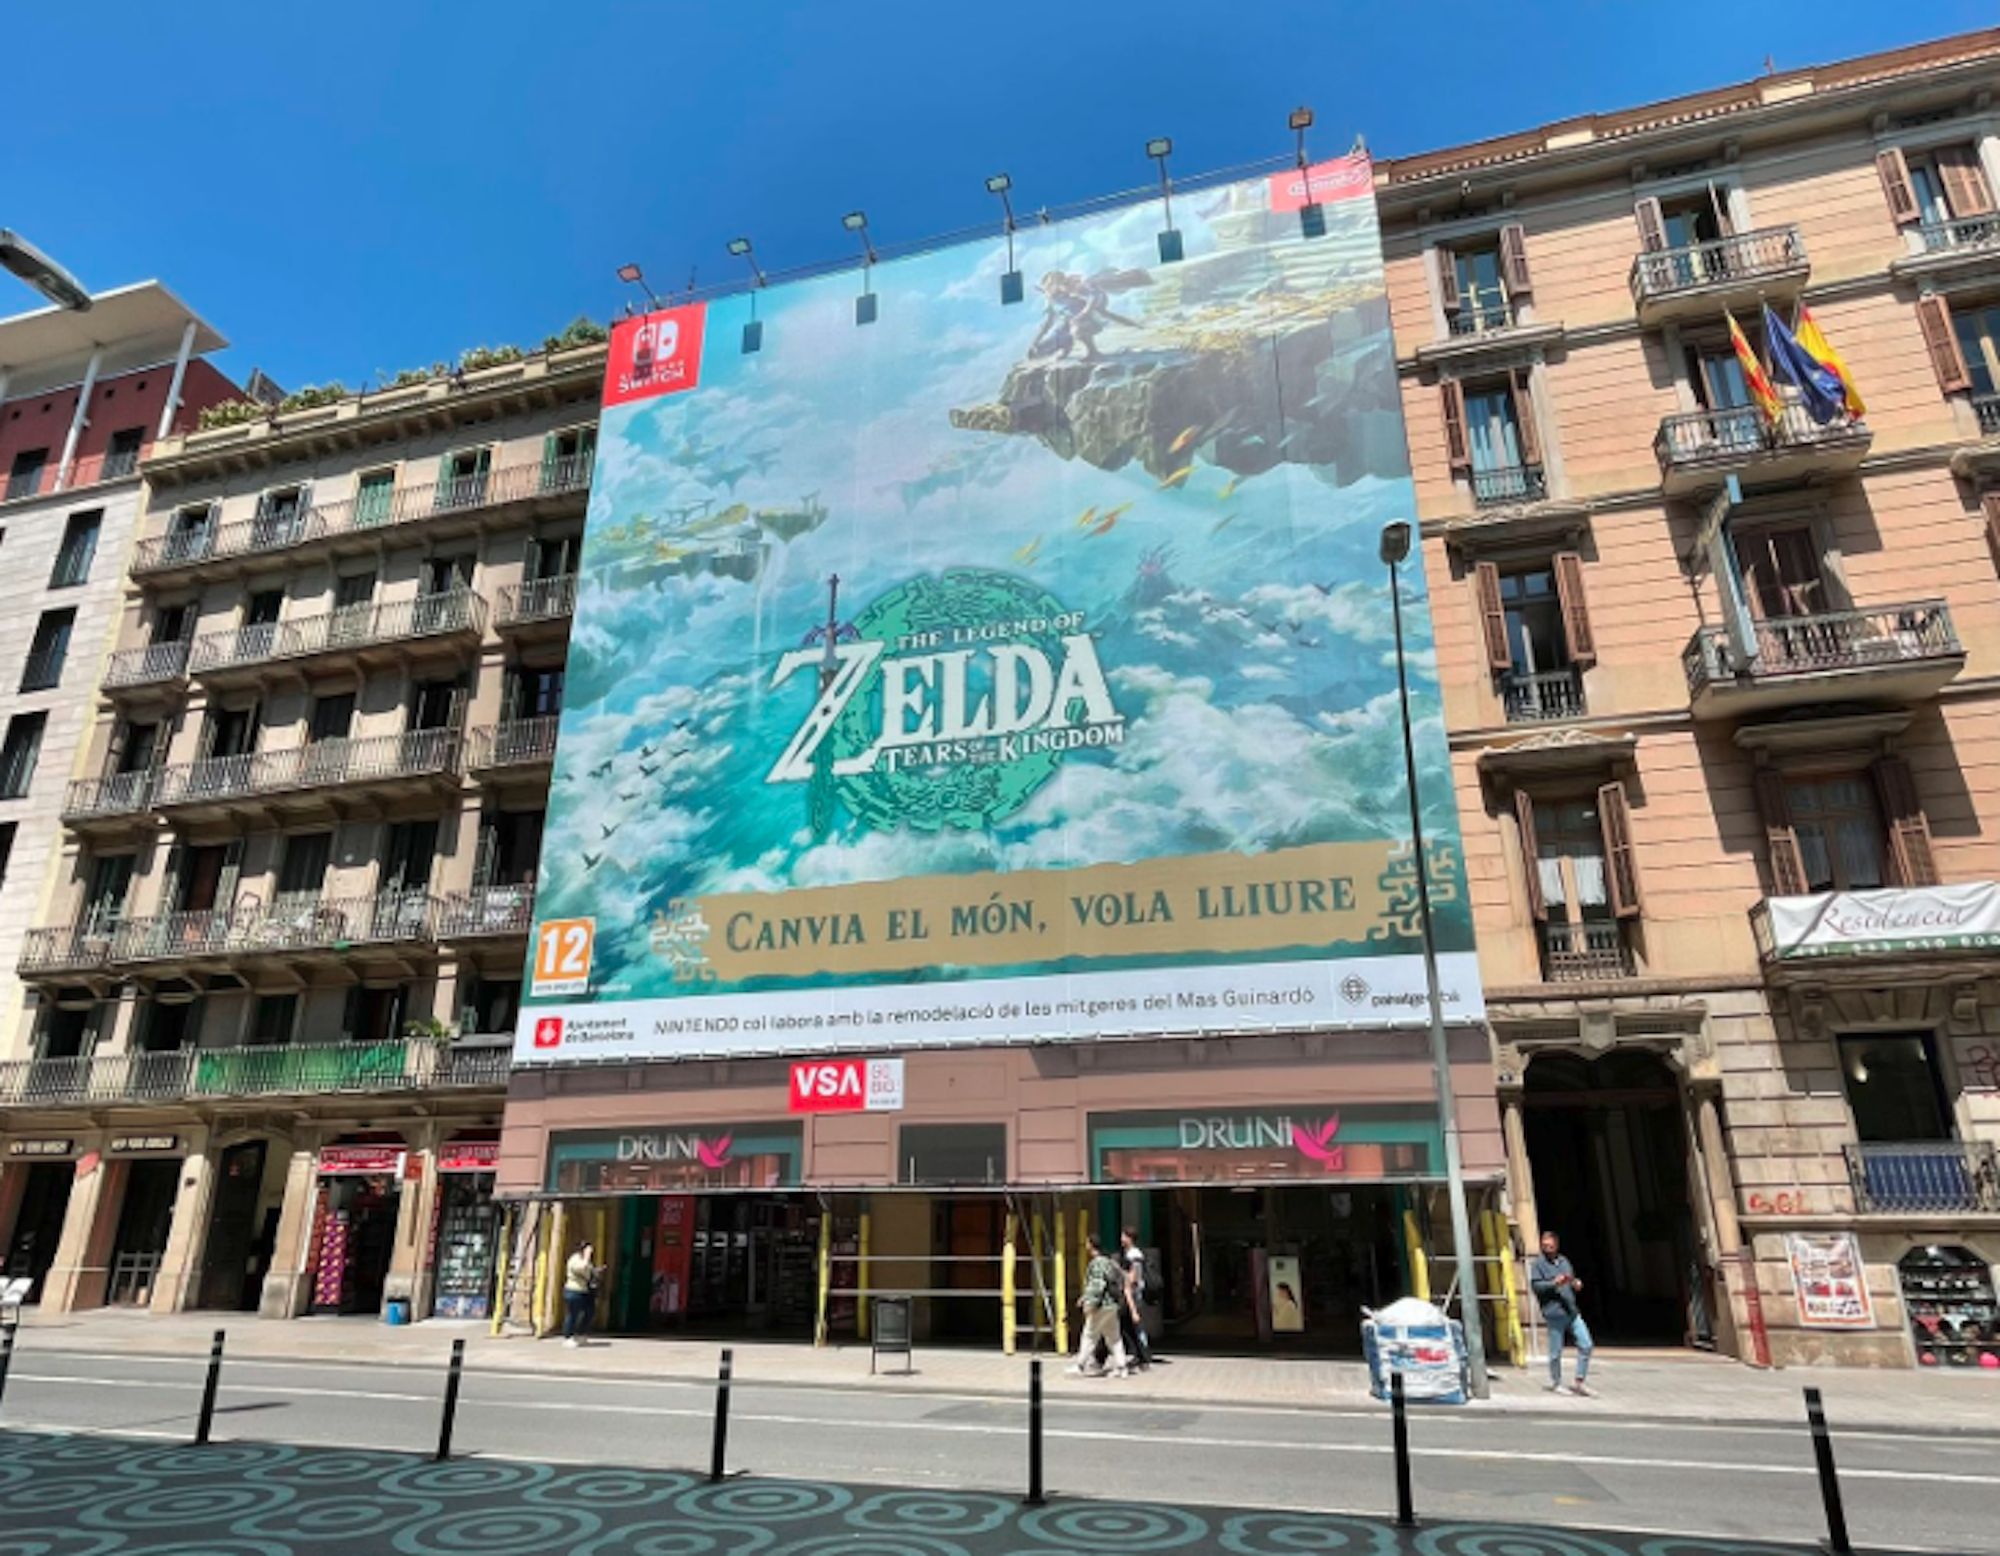 El videojuego de Zelda se publicita en Barcelona en catalán